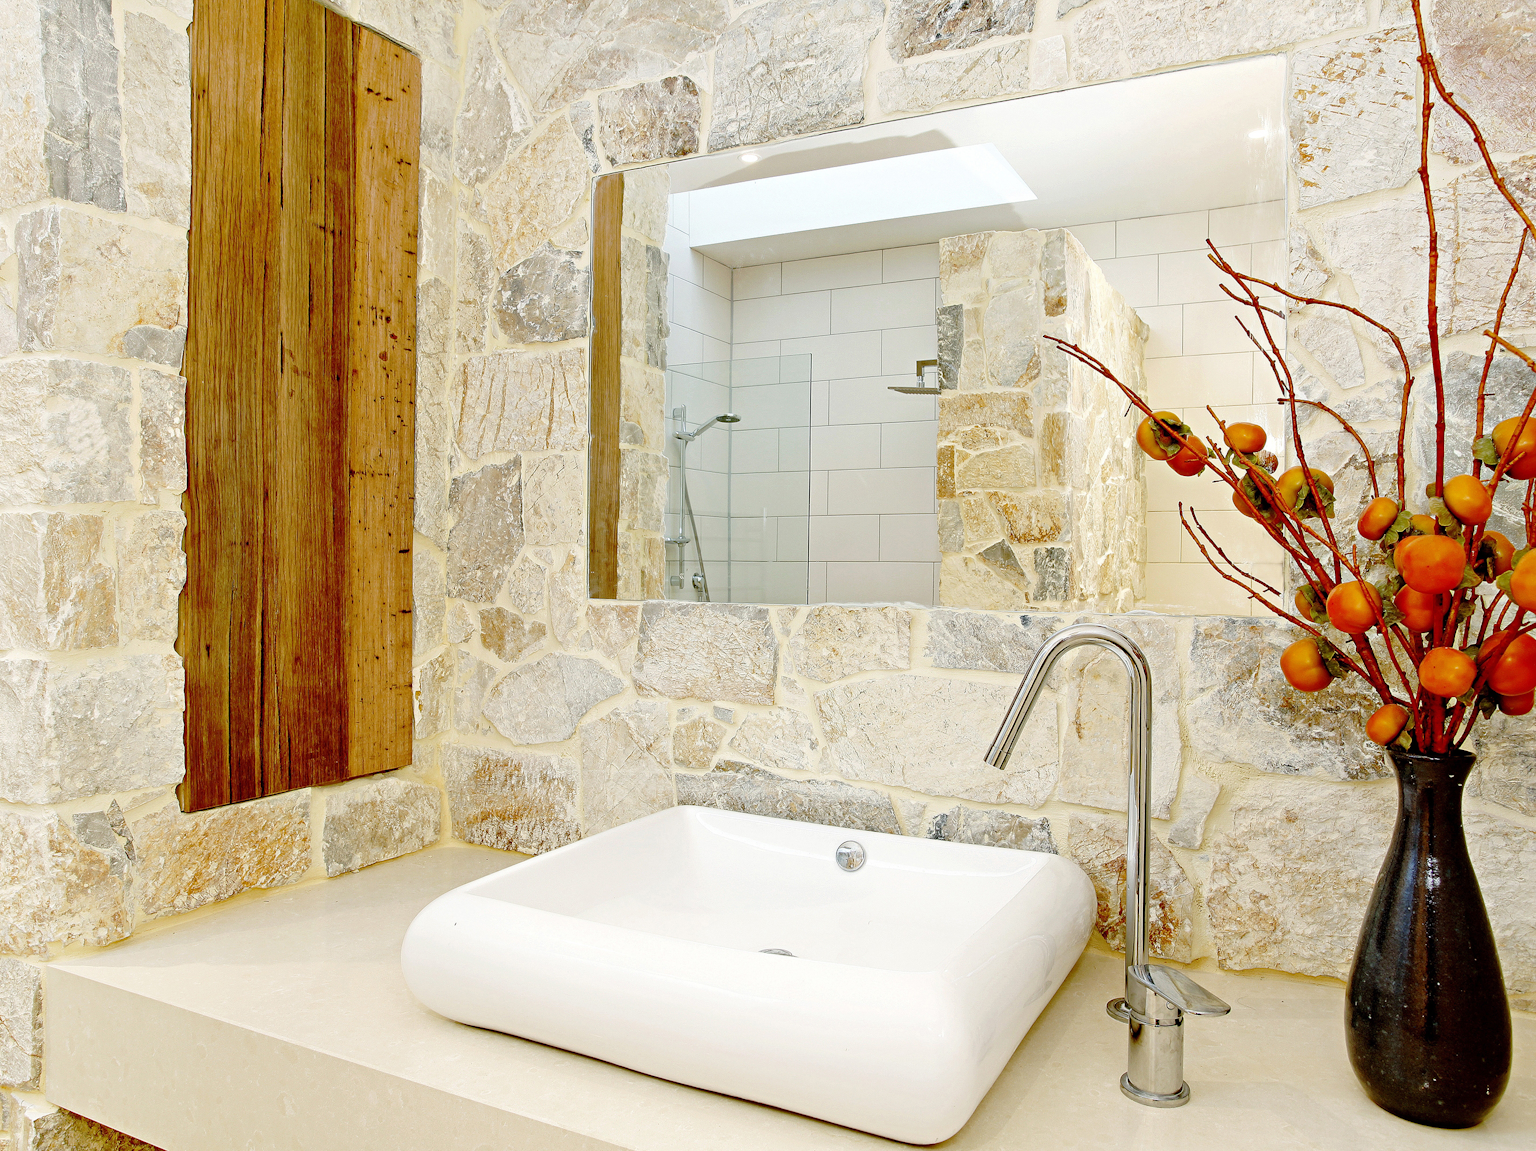 Coolum limestone random ashlar walling used as feature wall in bathroom design